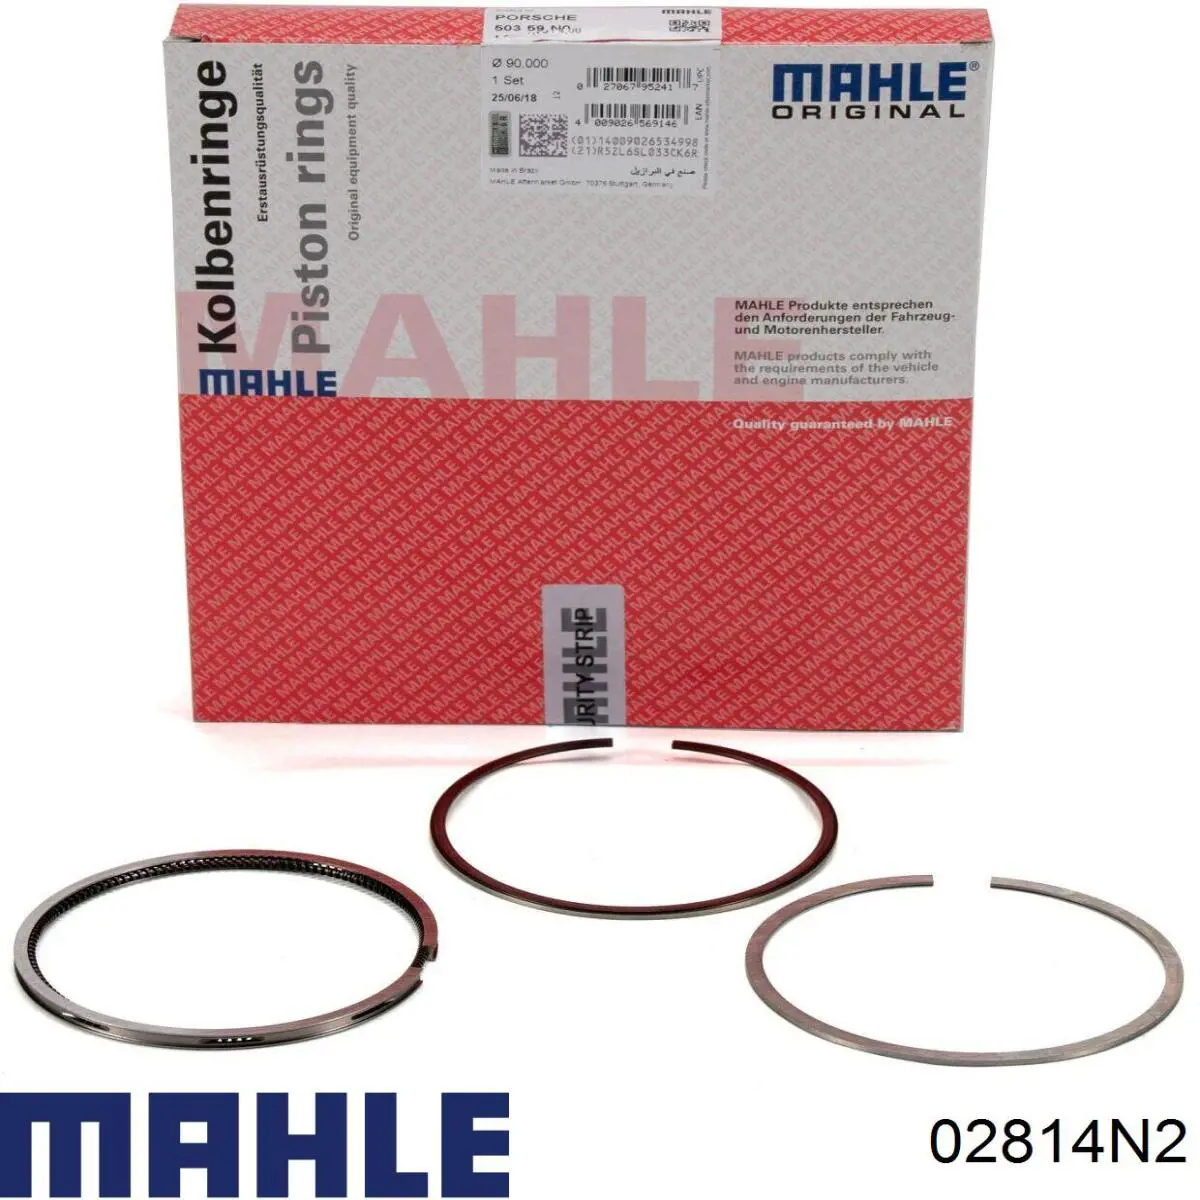 02814N2 Mahle Original кільця поршневі на 1 циліндр, 2-й ремонт (+0,50)